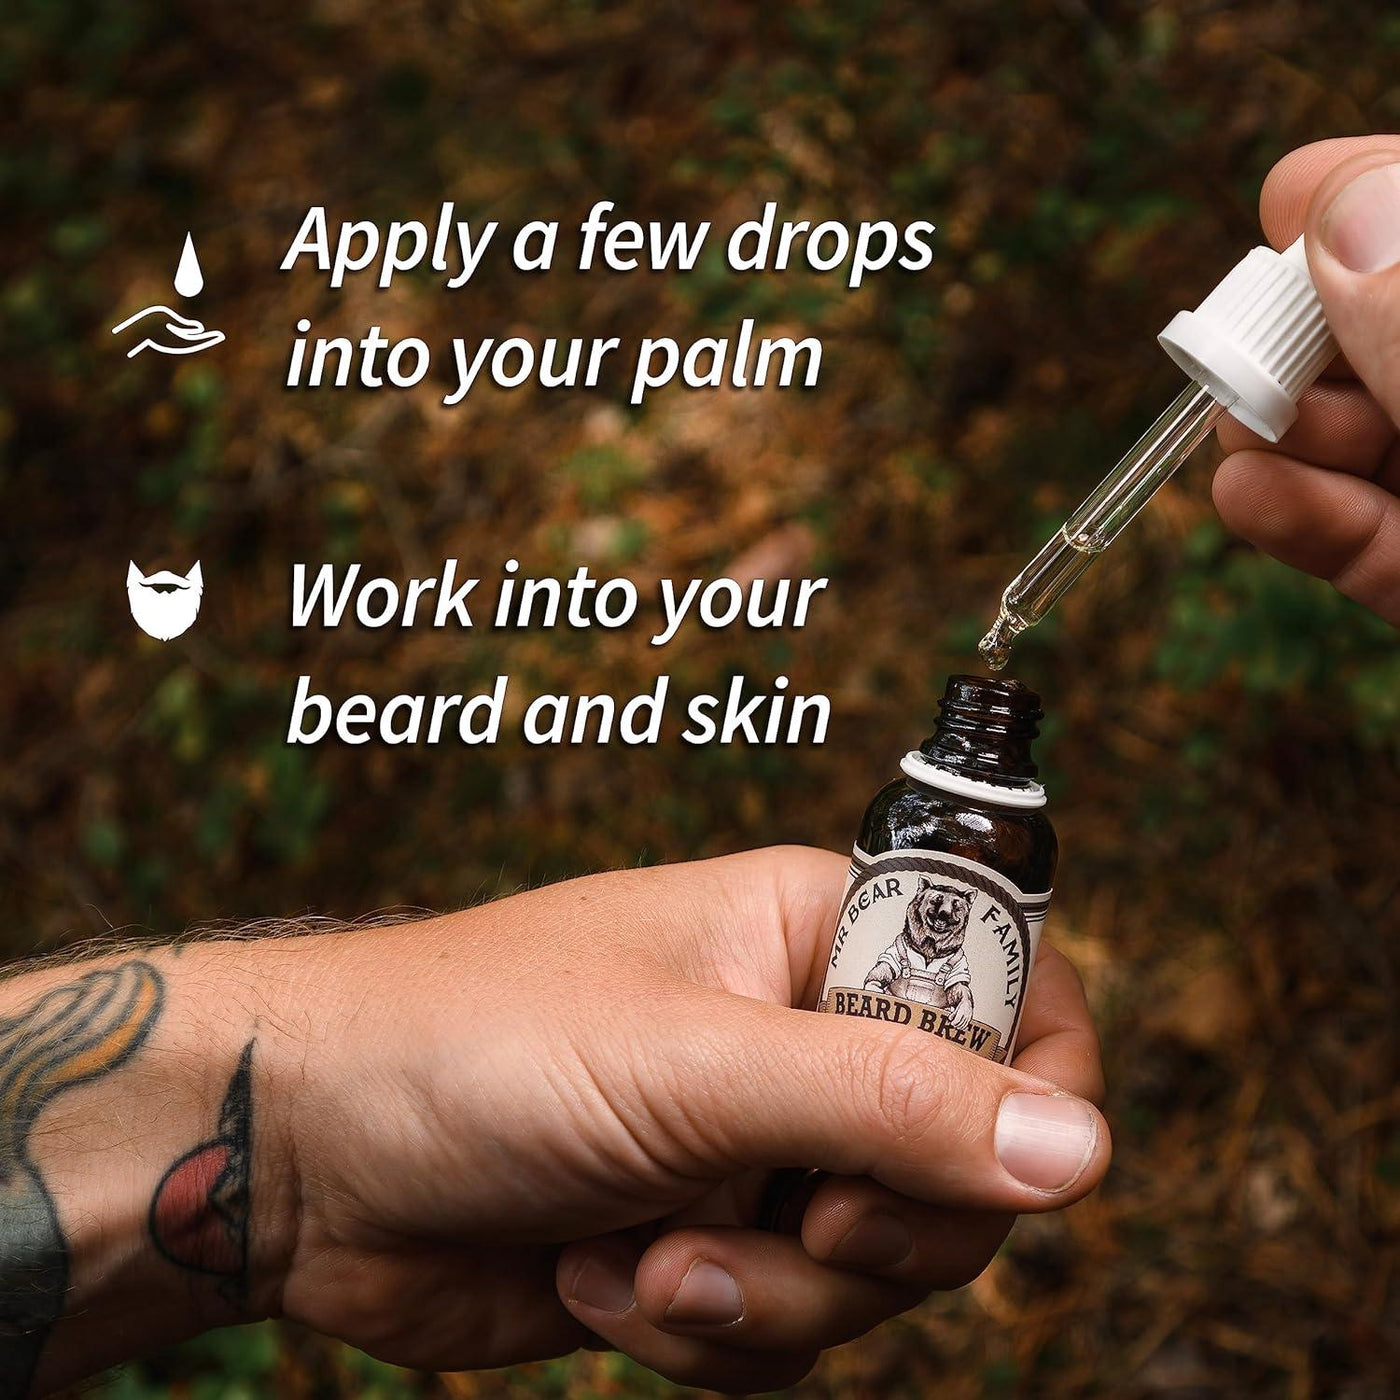 Natural Beard Oil for Men Scented Beard Moisturiser Oil 60 ML Jojoba + Argan - Massive Discounts